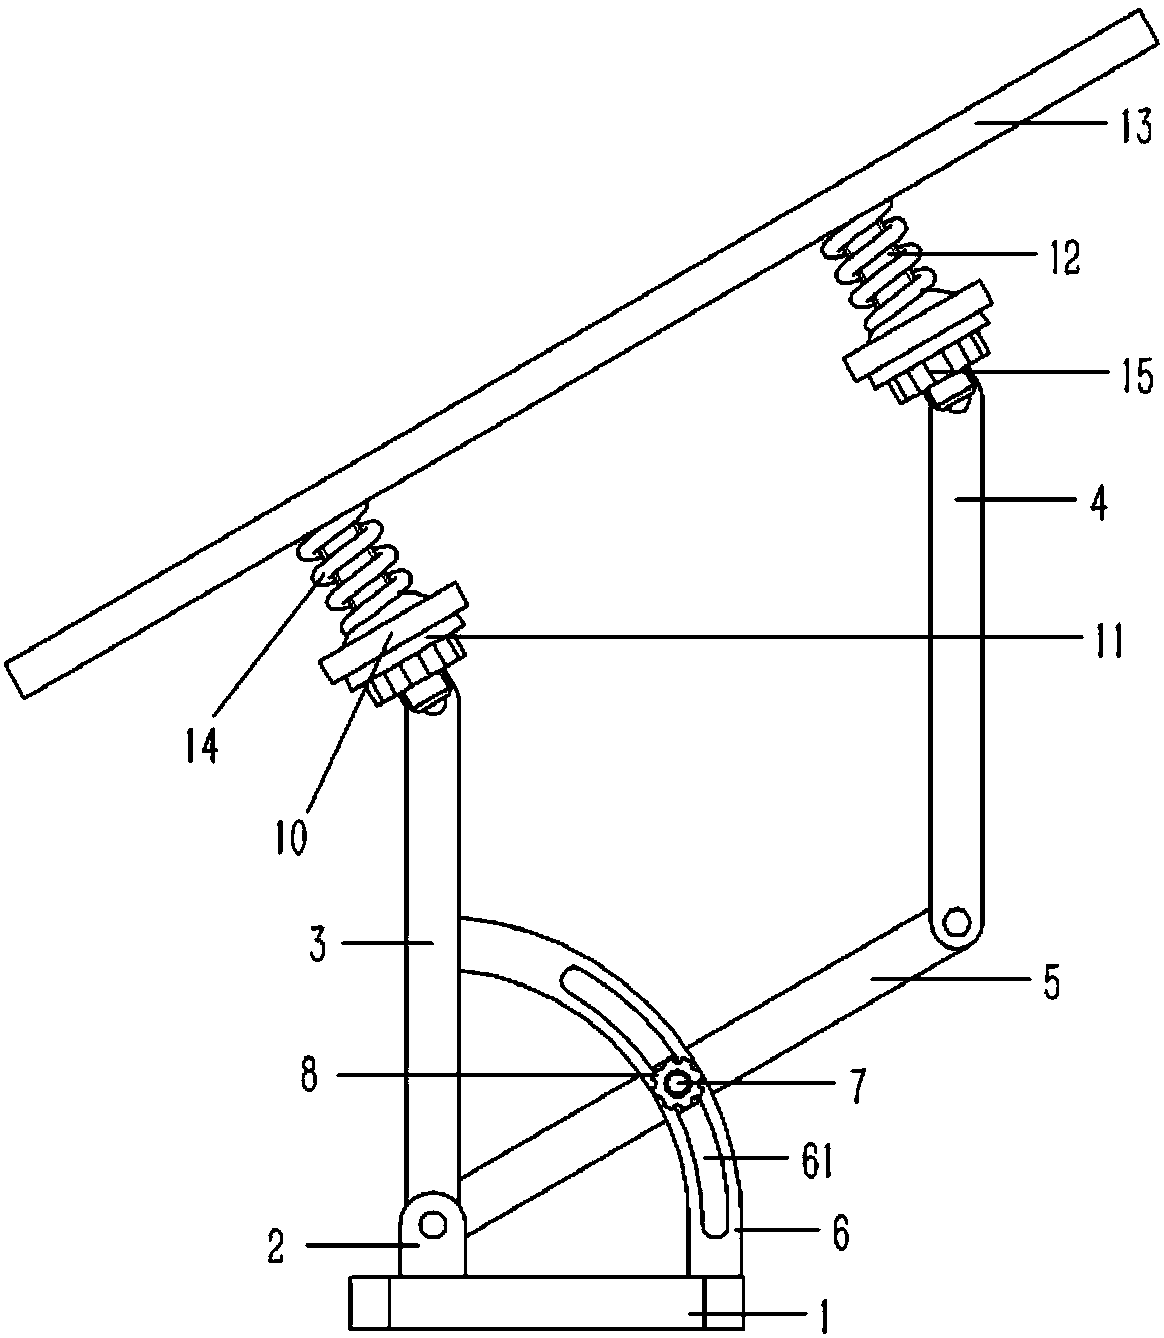 An angle-adjustable solar panel mounting bracket